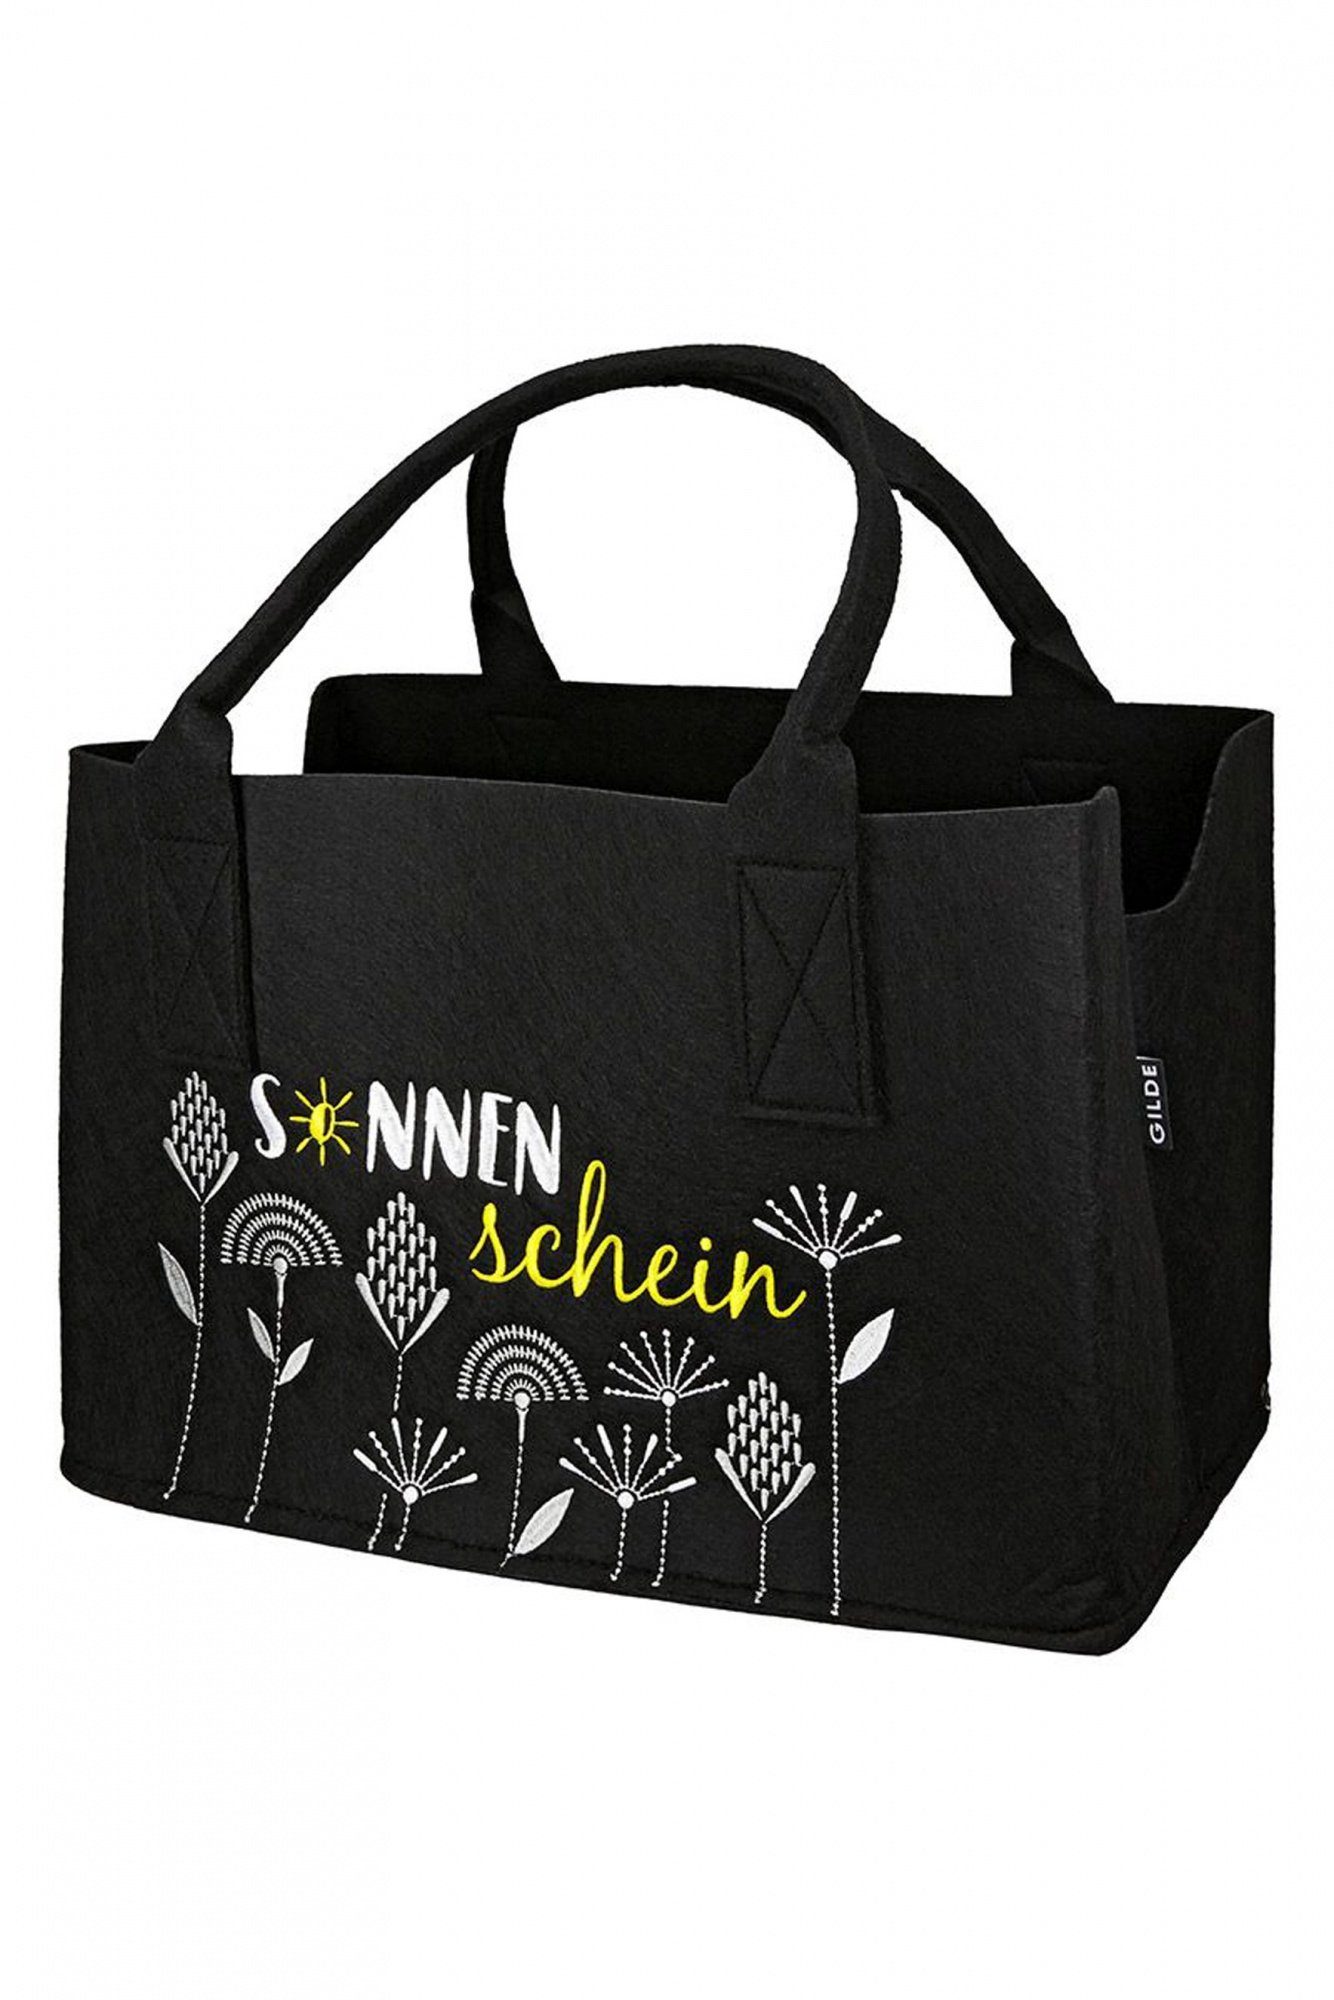 GILDE Freizeittasche schwarz - - Filztasche Gilde Fächerblumen-Sonnenschein